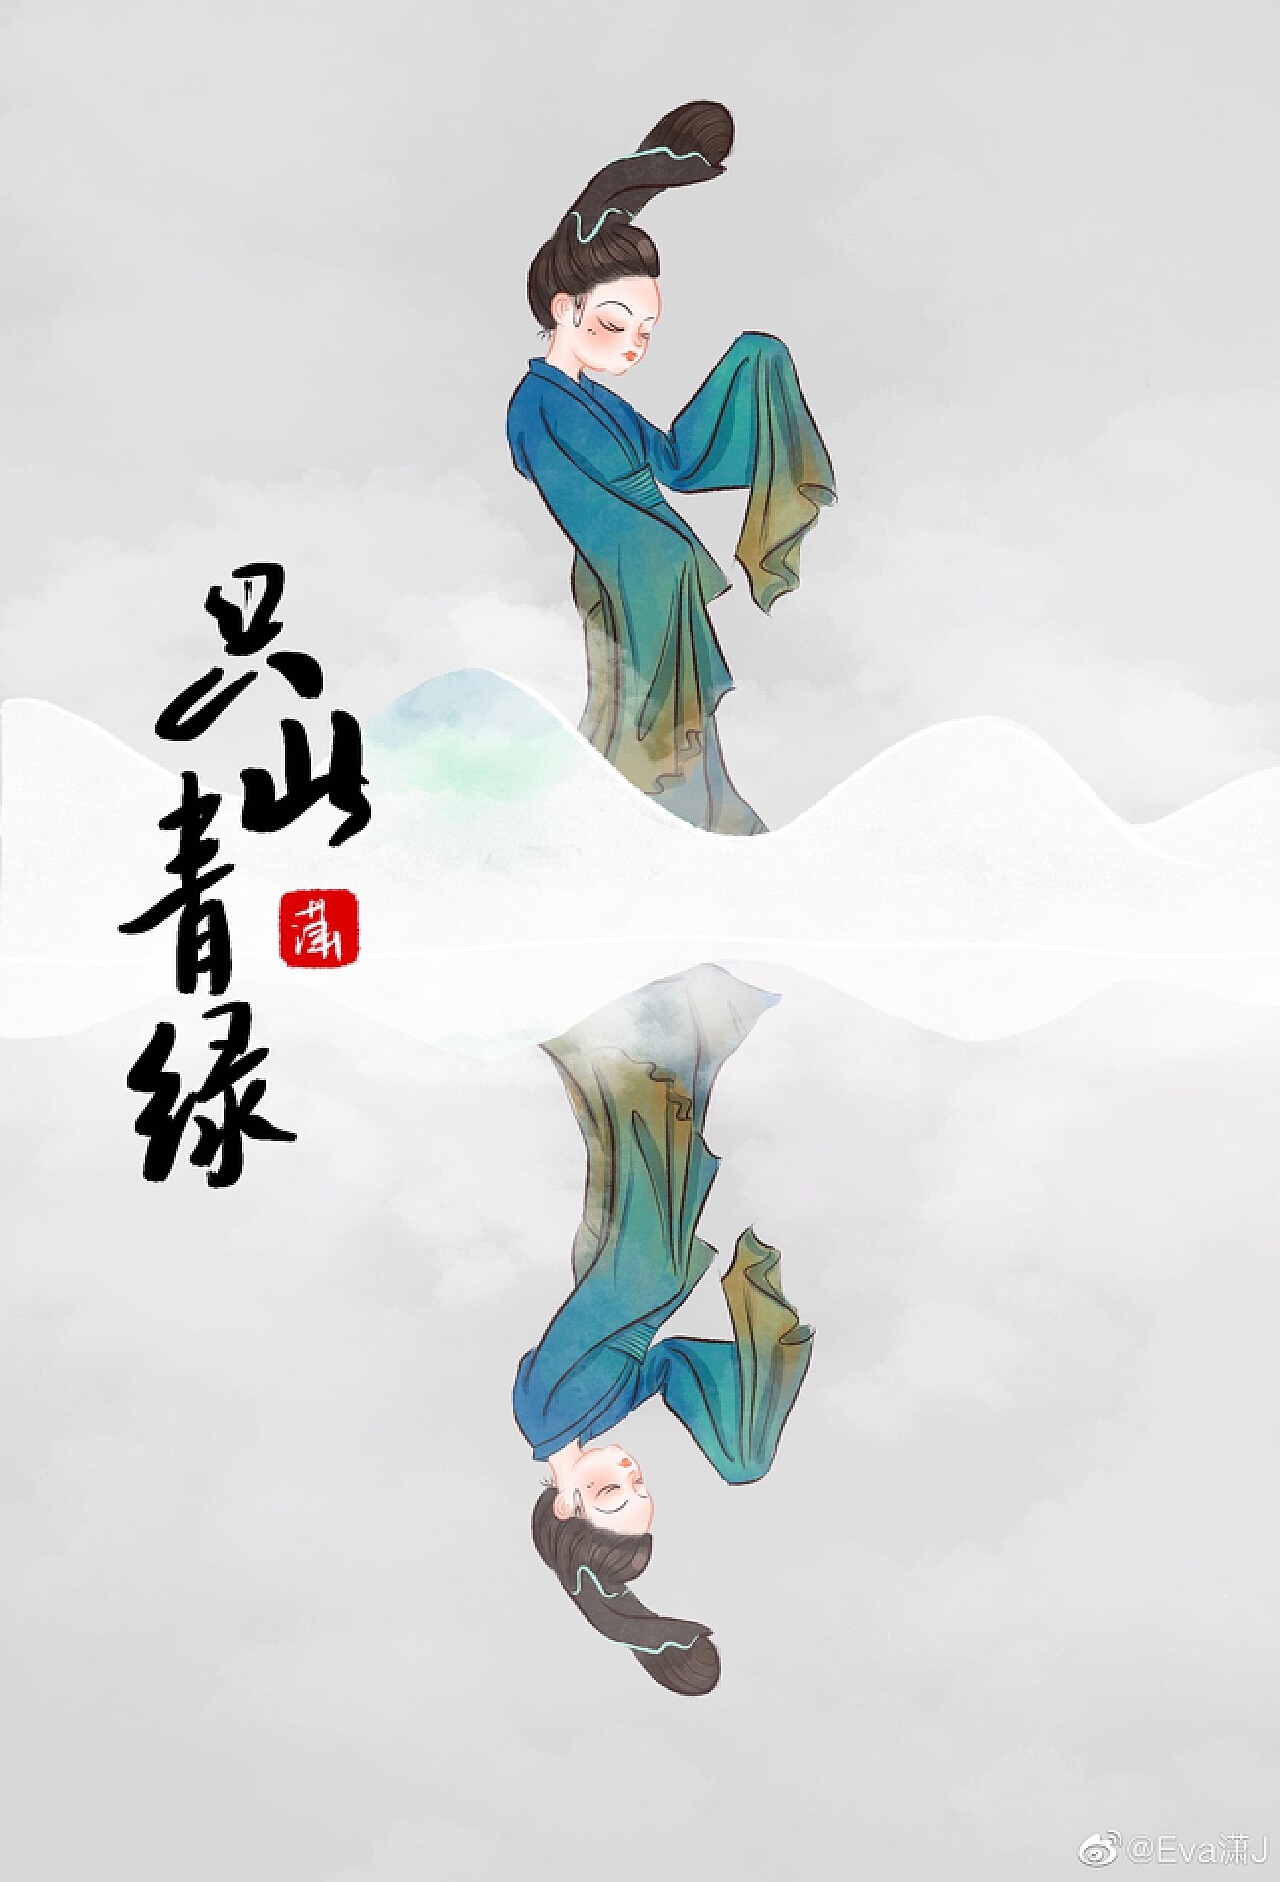 只此青绿舞台剧太美了～速涂几张郑州|插画师eva潇